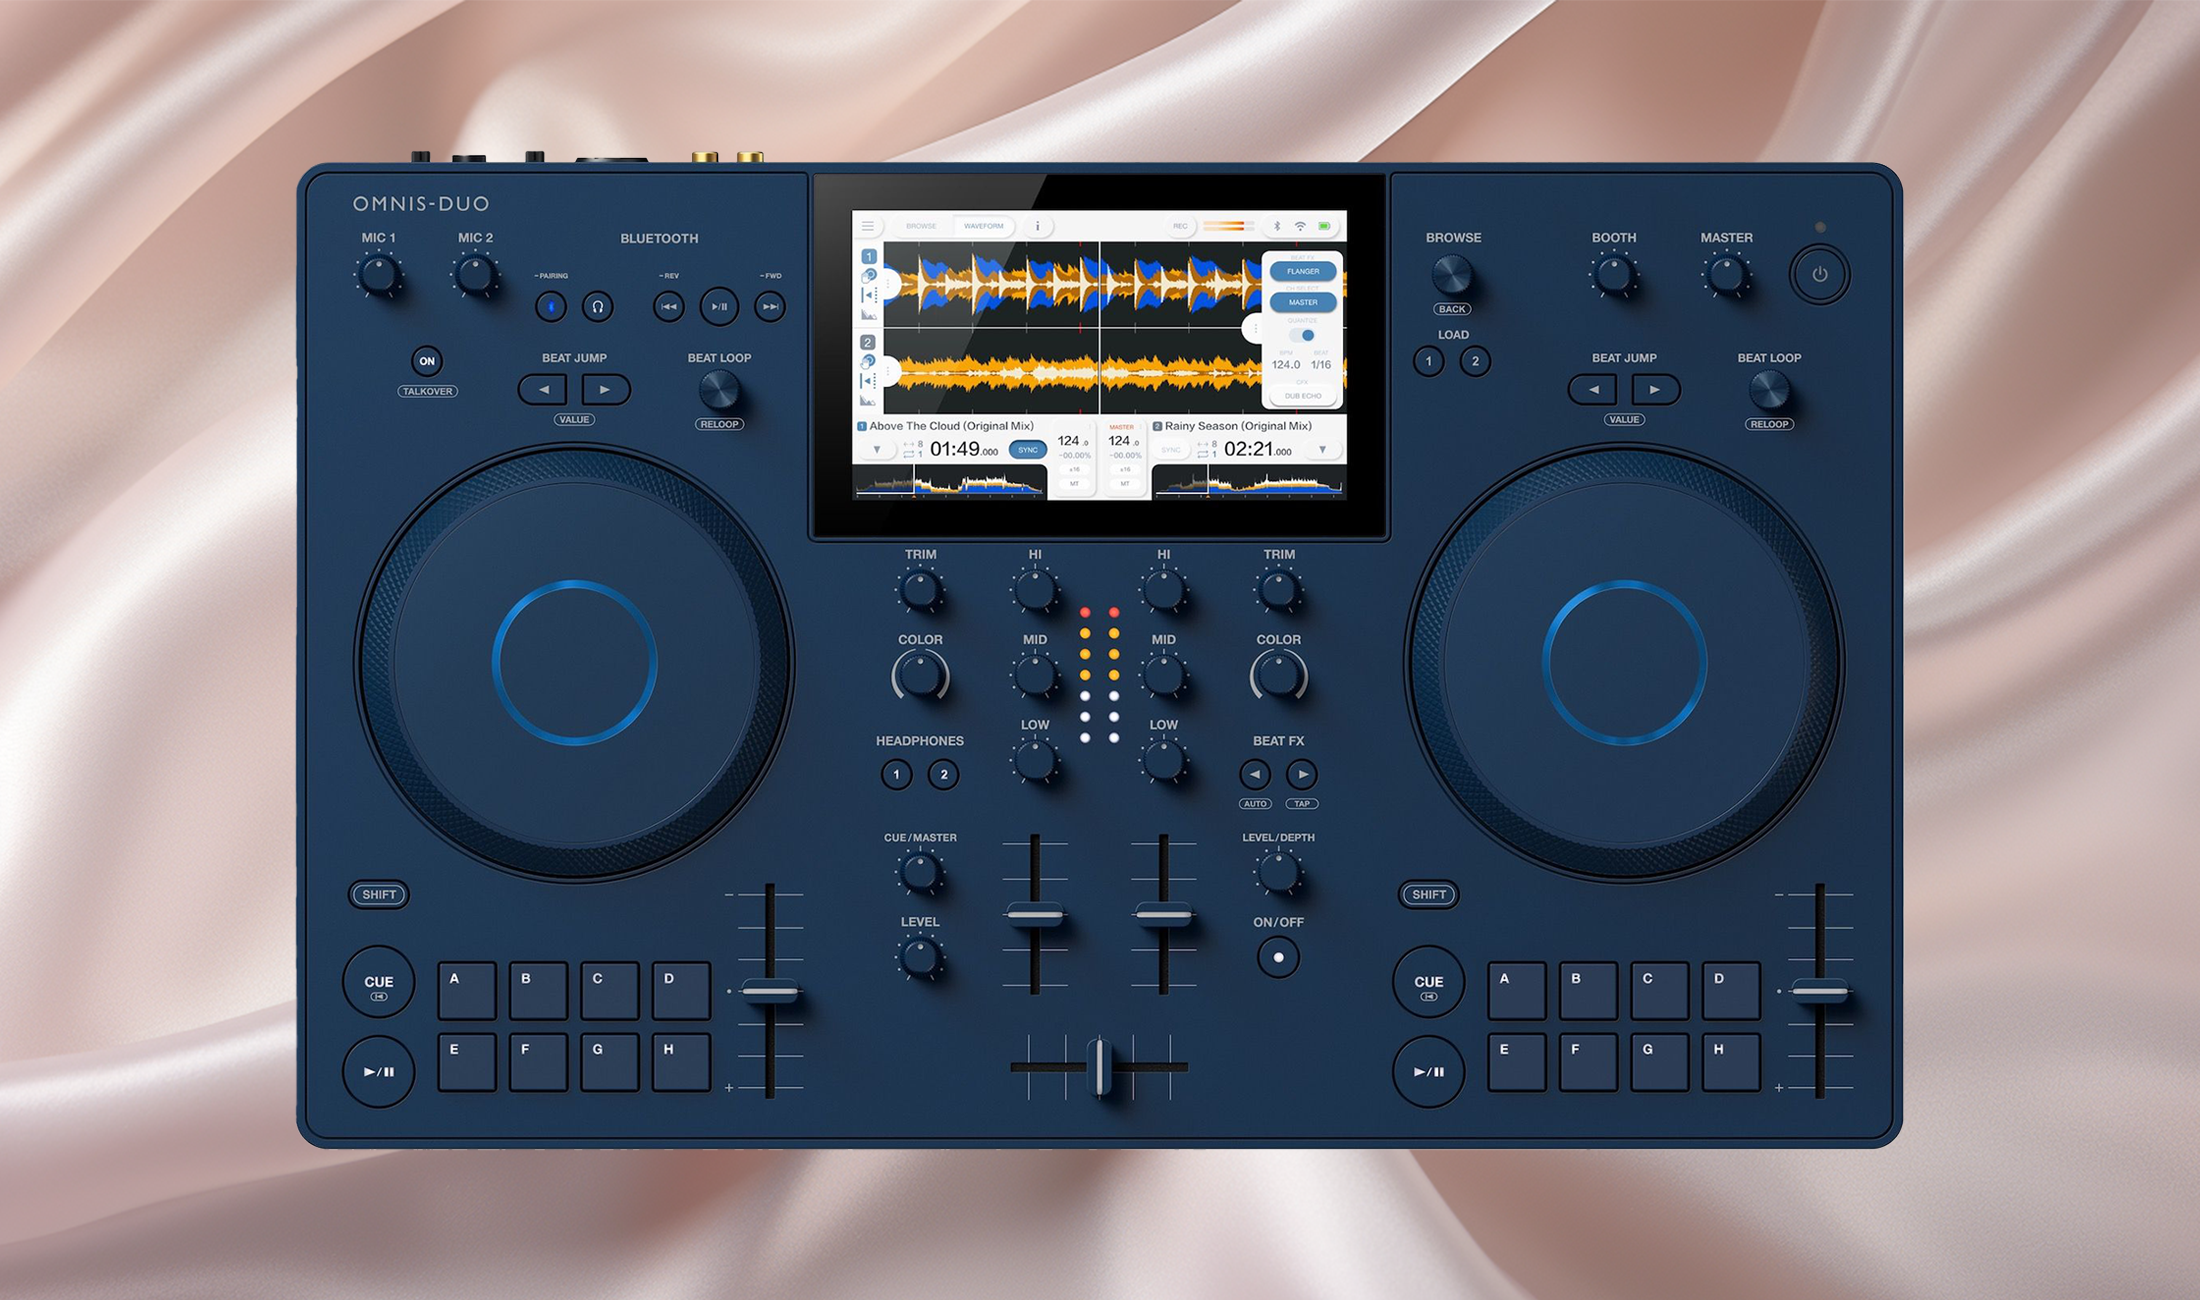 AlphaTheta stellt als eigene Marke erstes Produkt vor: OMNIS-DUO DJ-System